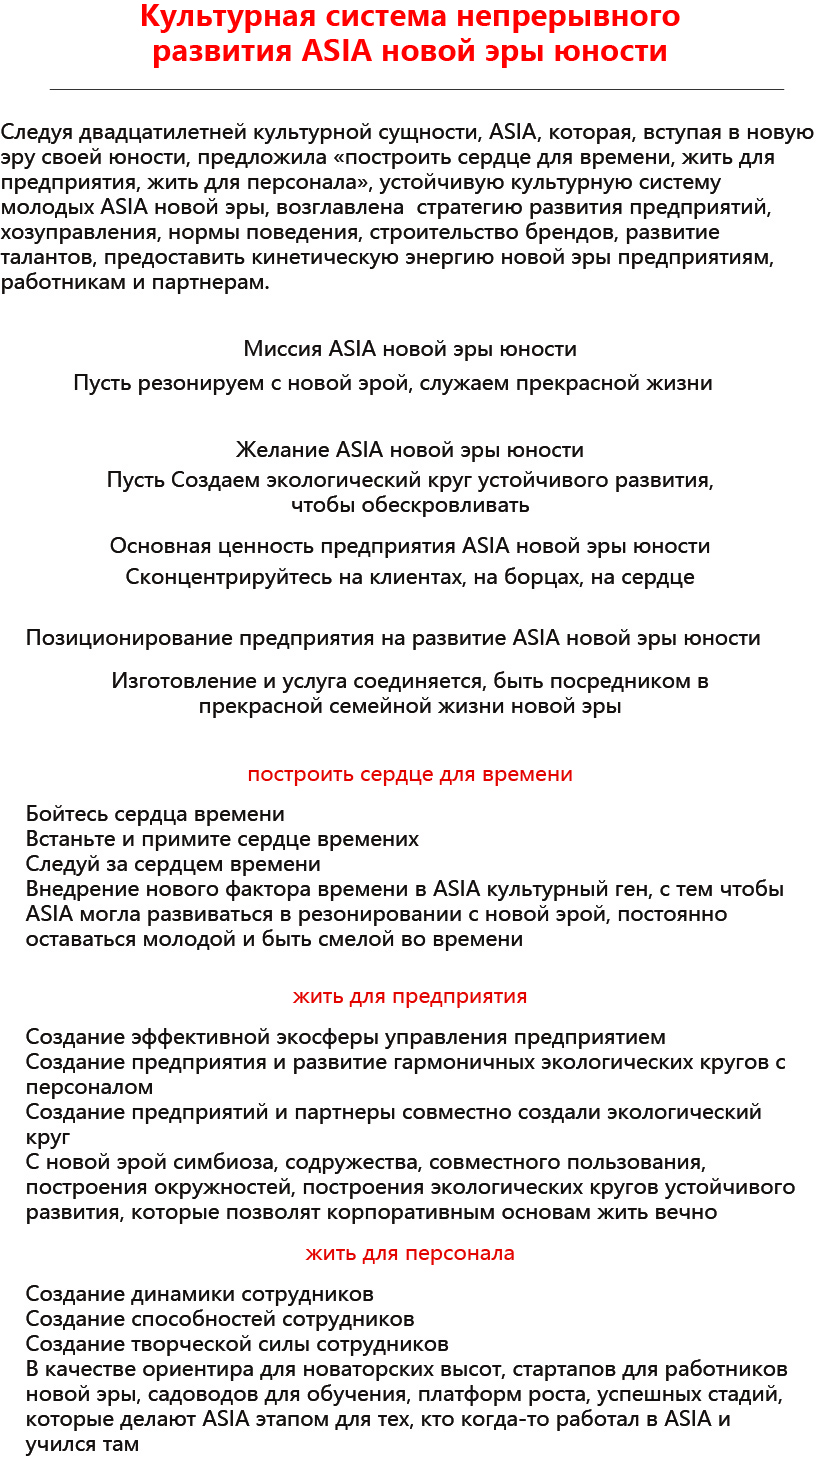 文化单页（俄文）.jpg